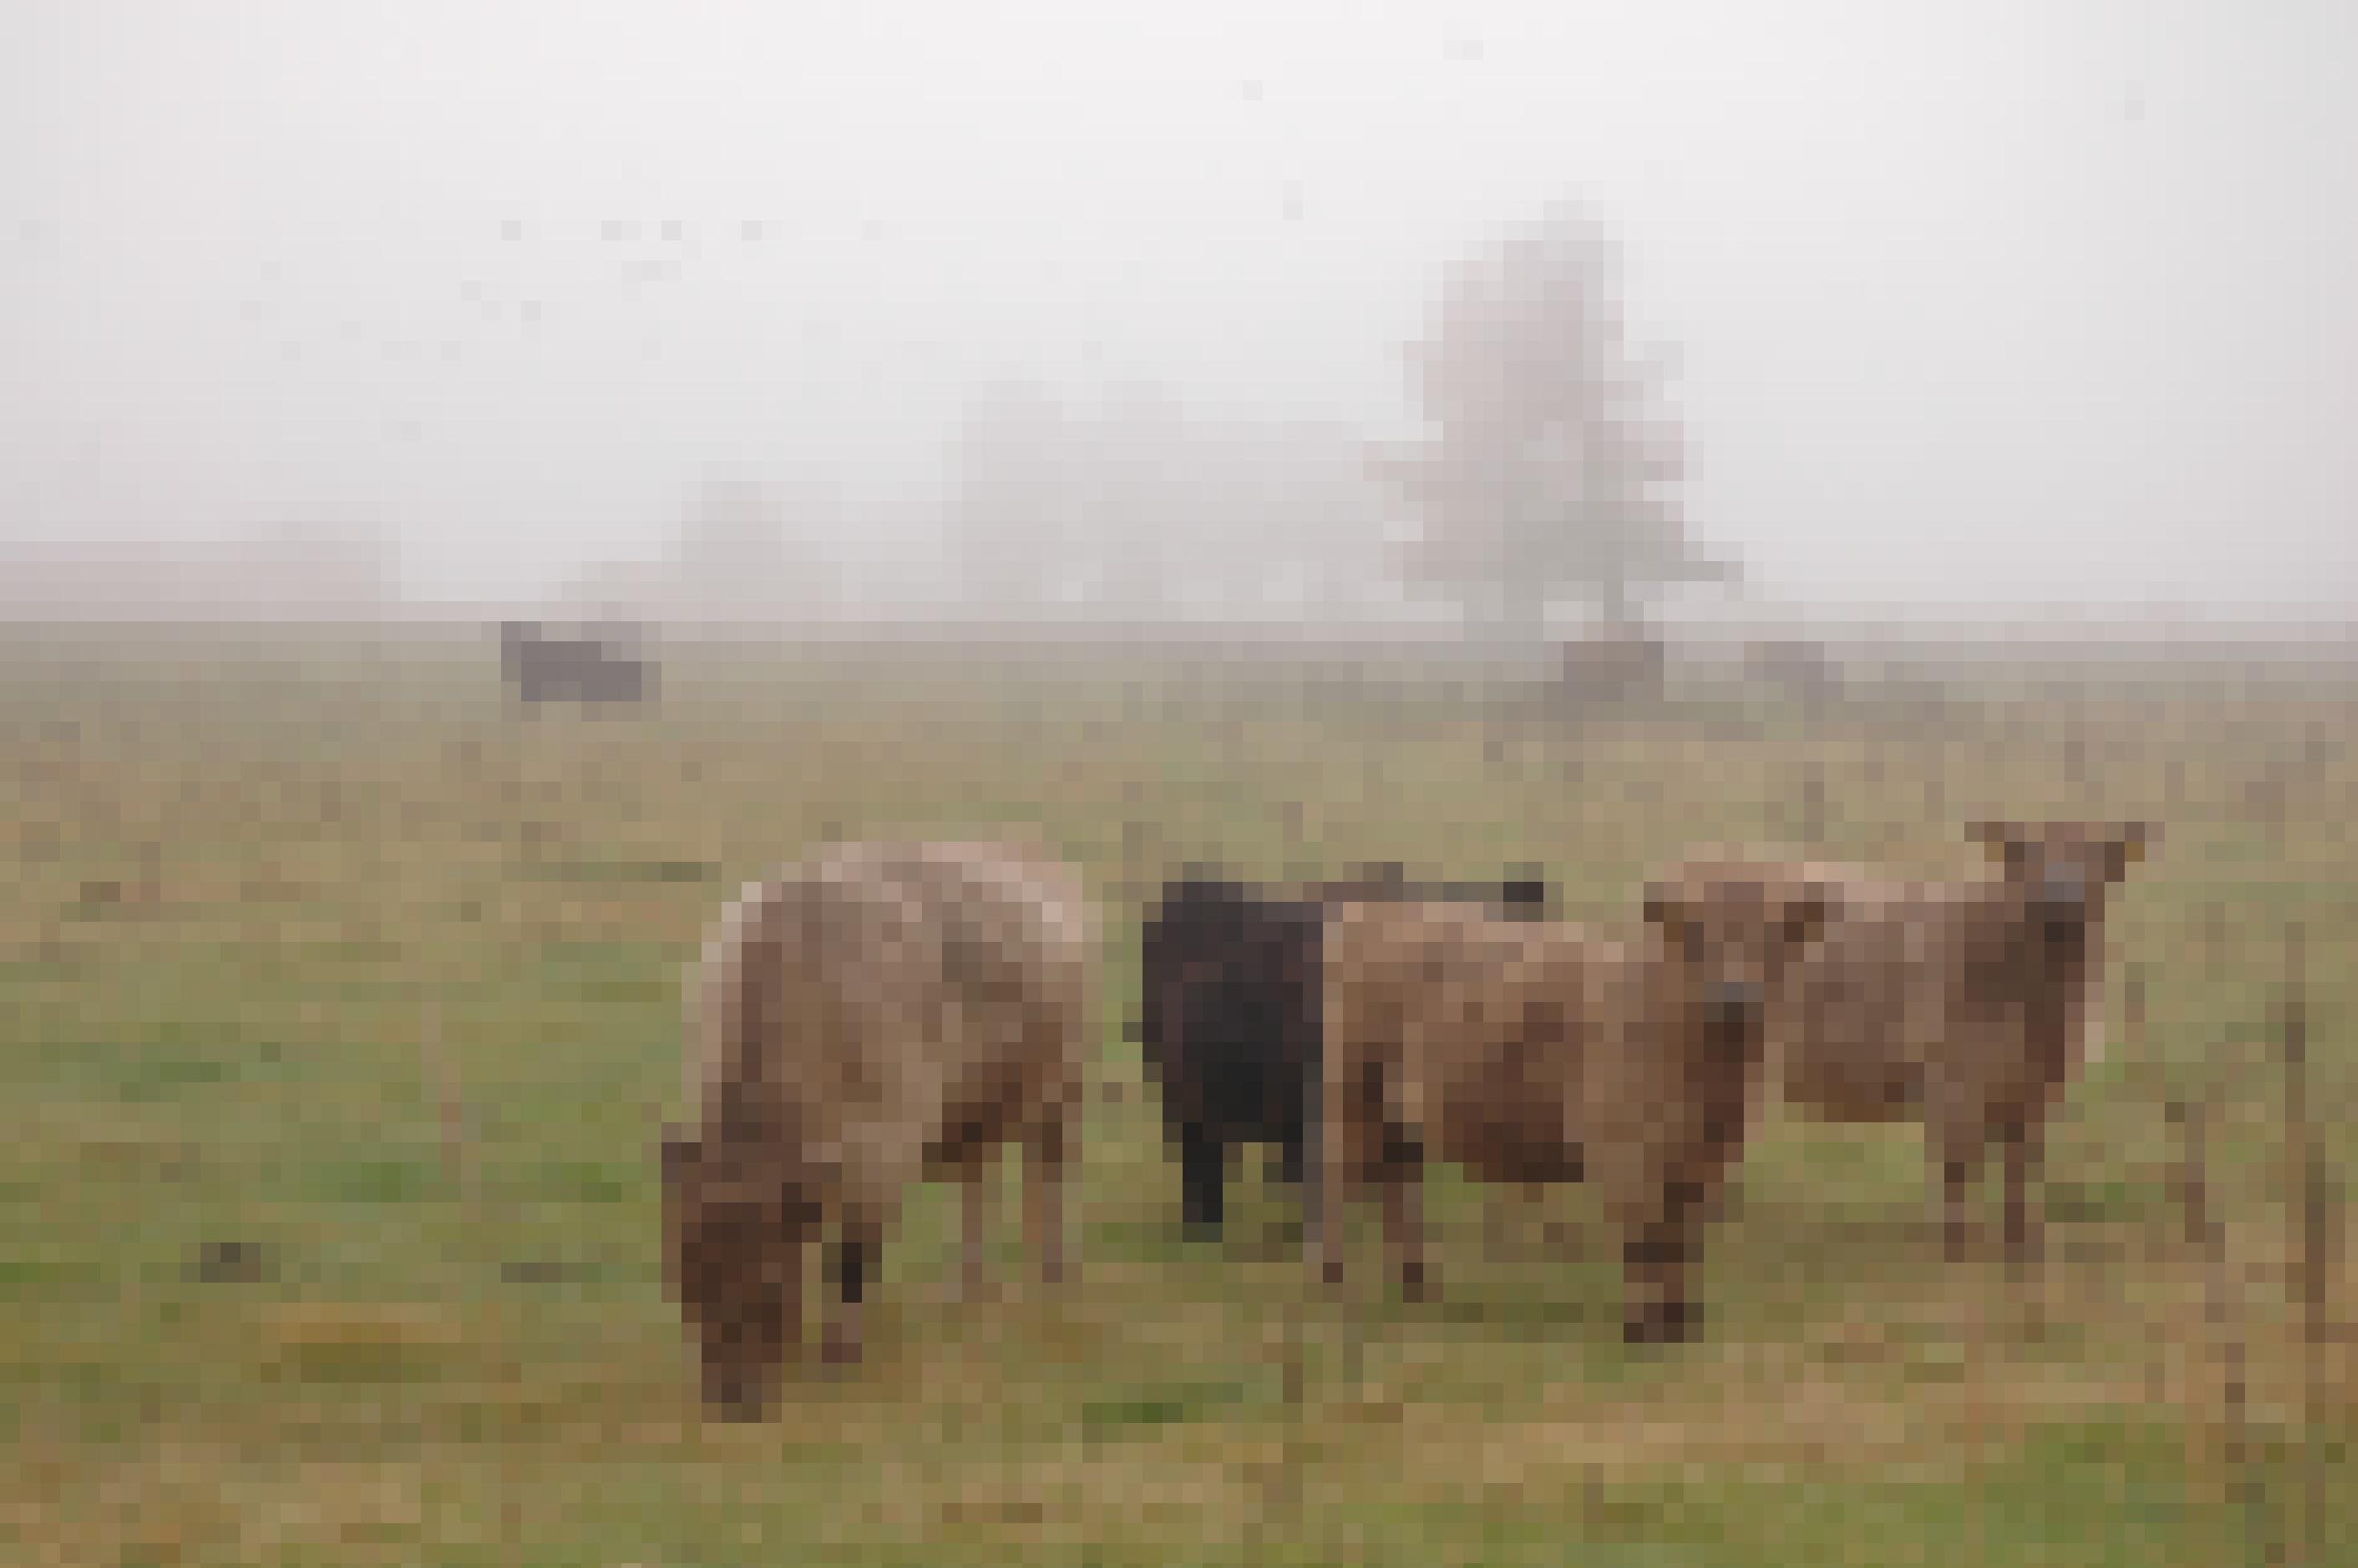 Eine kleine Gruppe zottiger Galloway-Rinder, teils hellbraun, teils schwarz, steht auf einer nebelverhangenen Wiese am Dümmer See